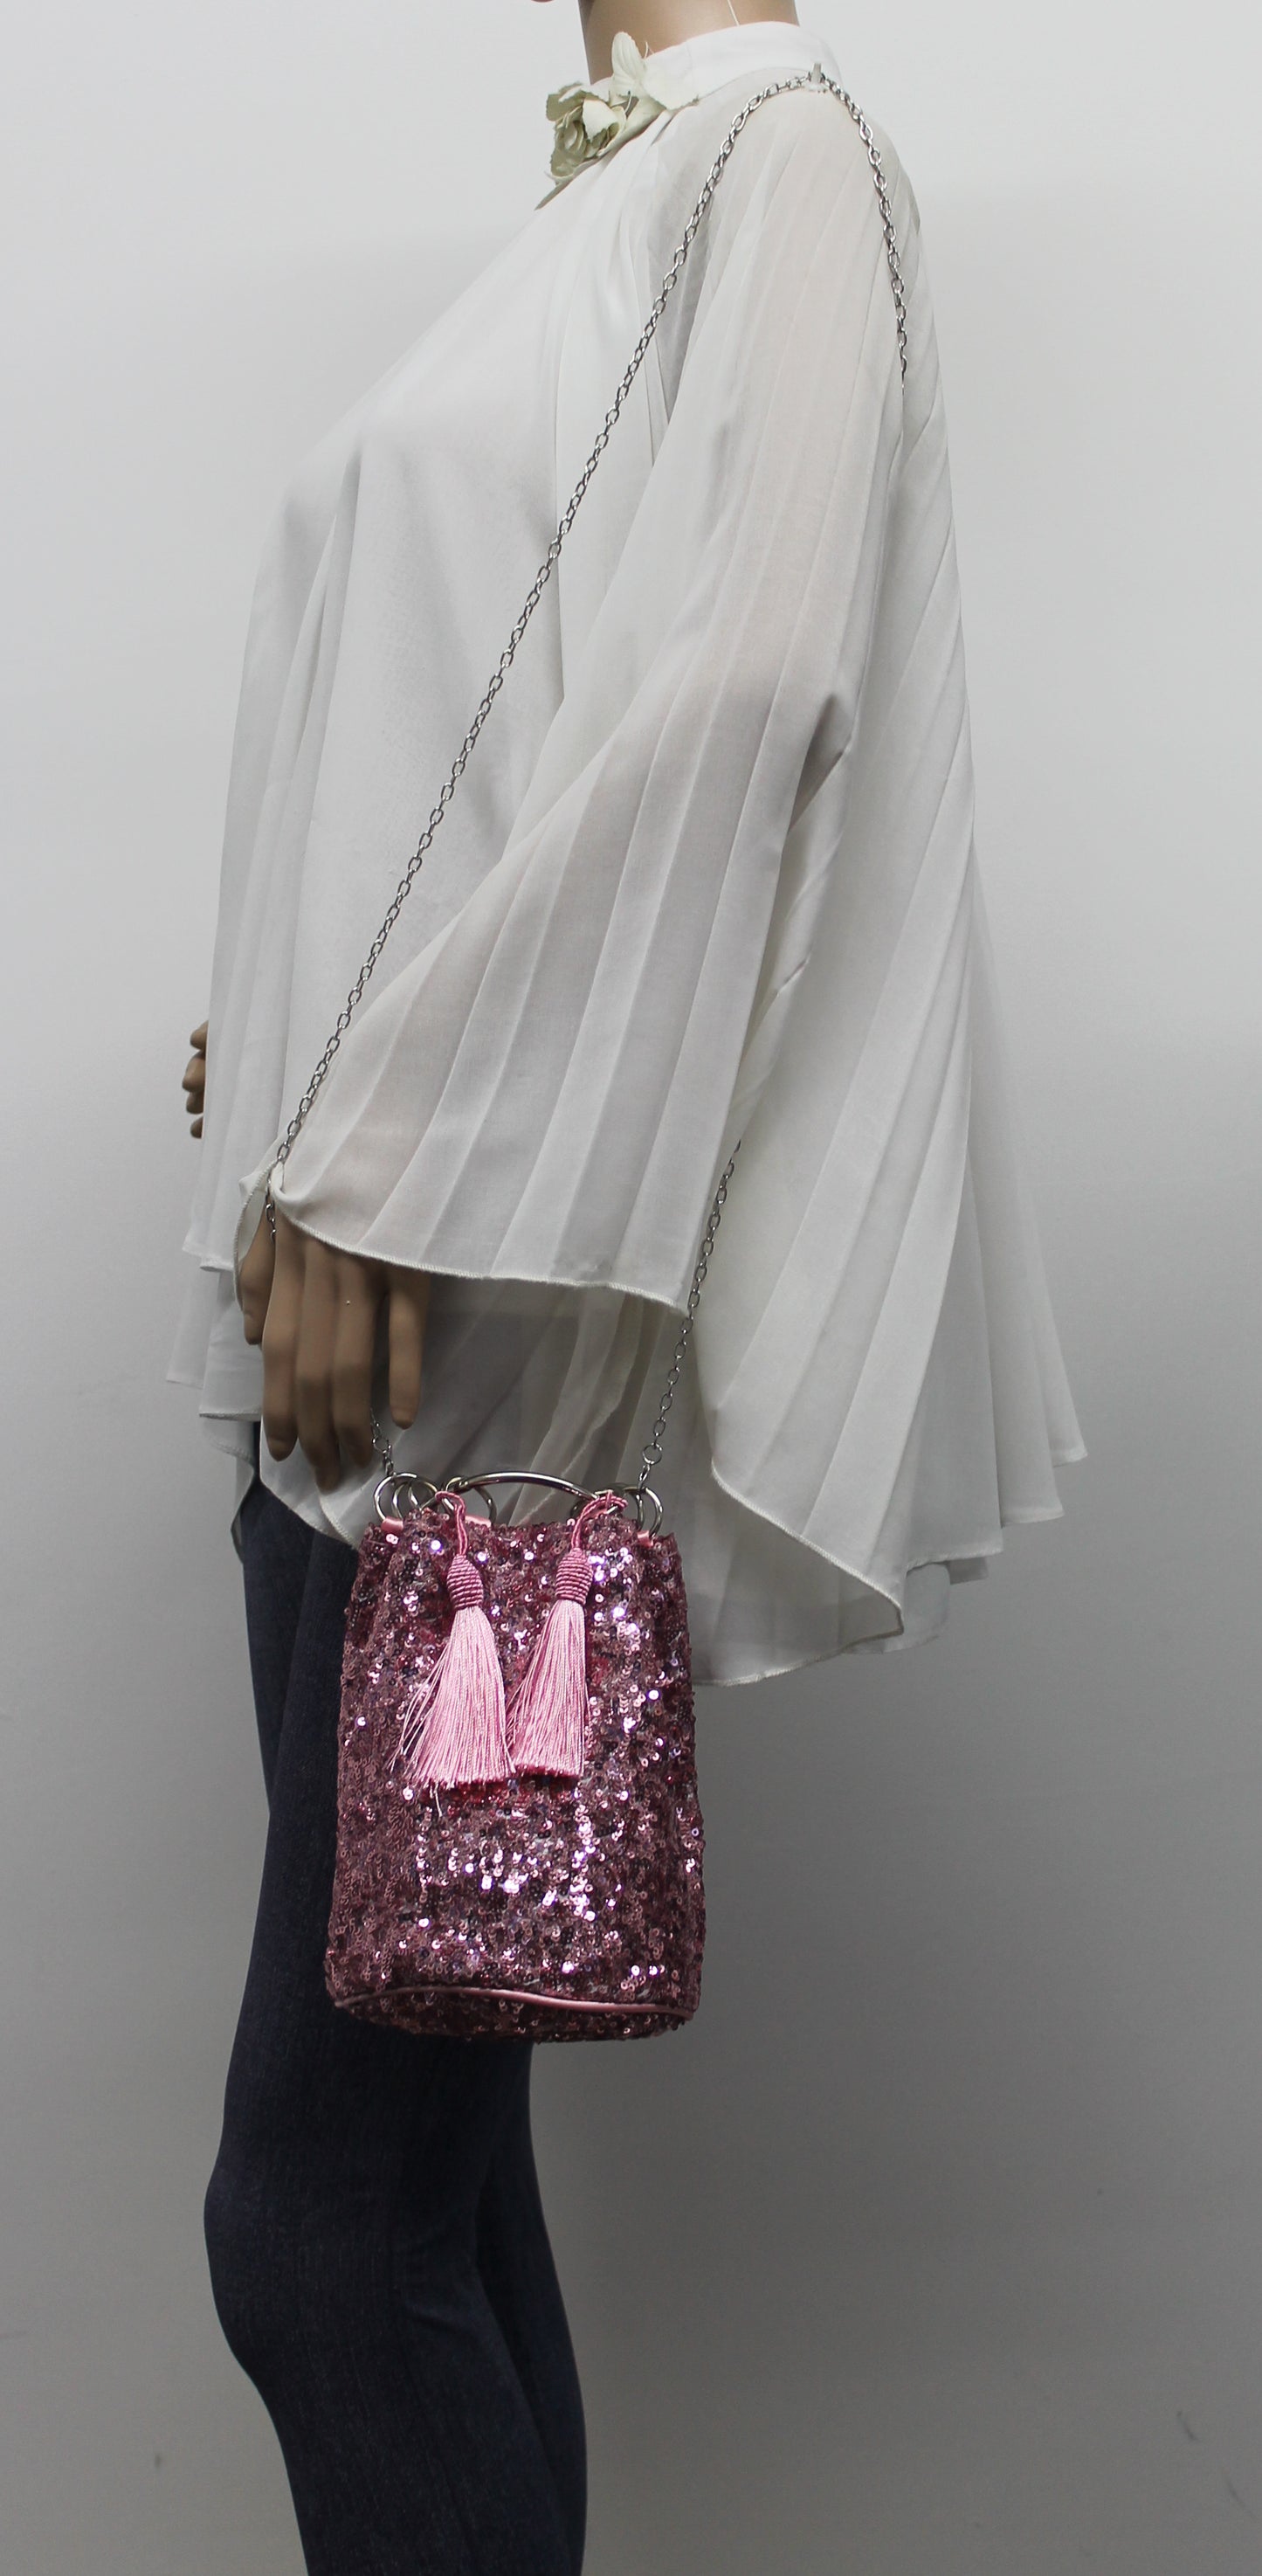 Denise Sequin & Ring Clutch Bag Pink